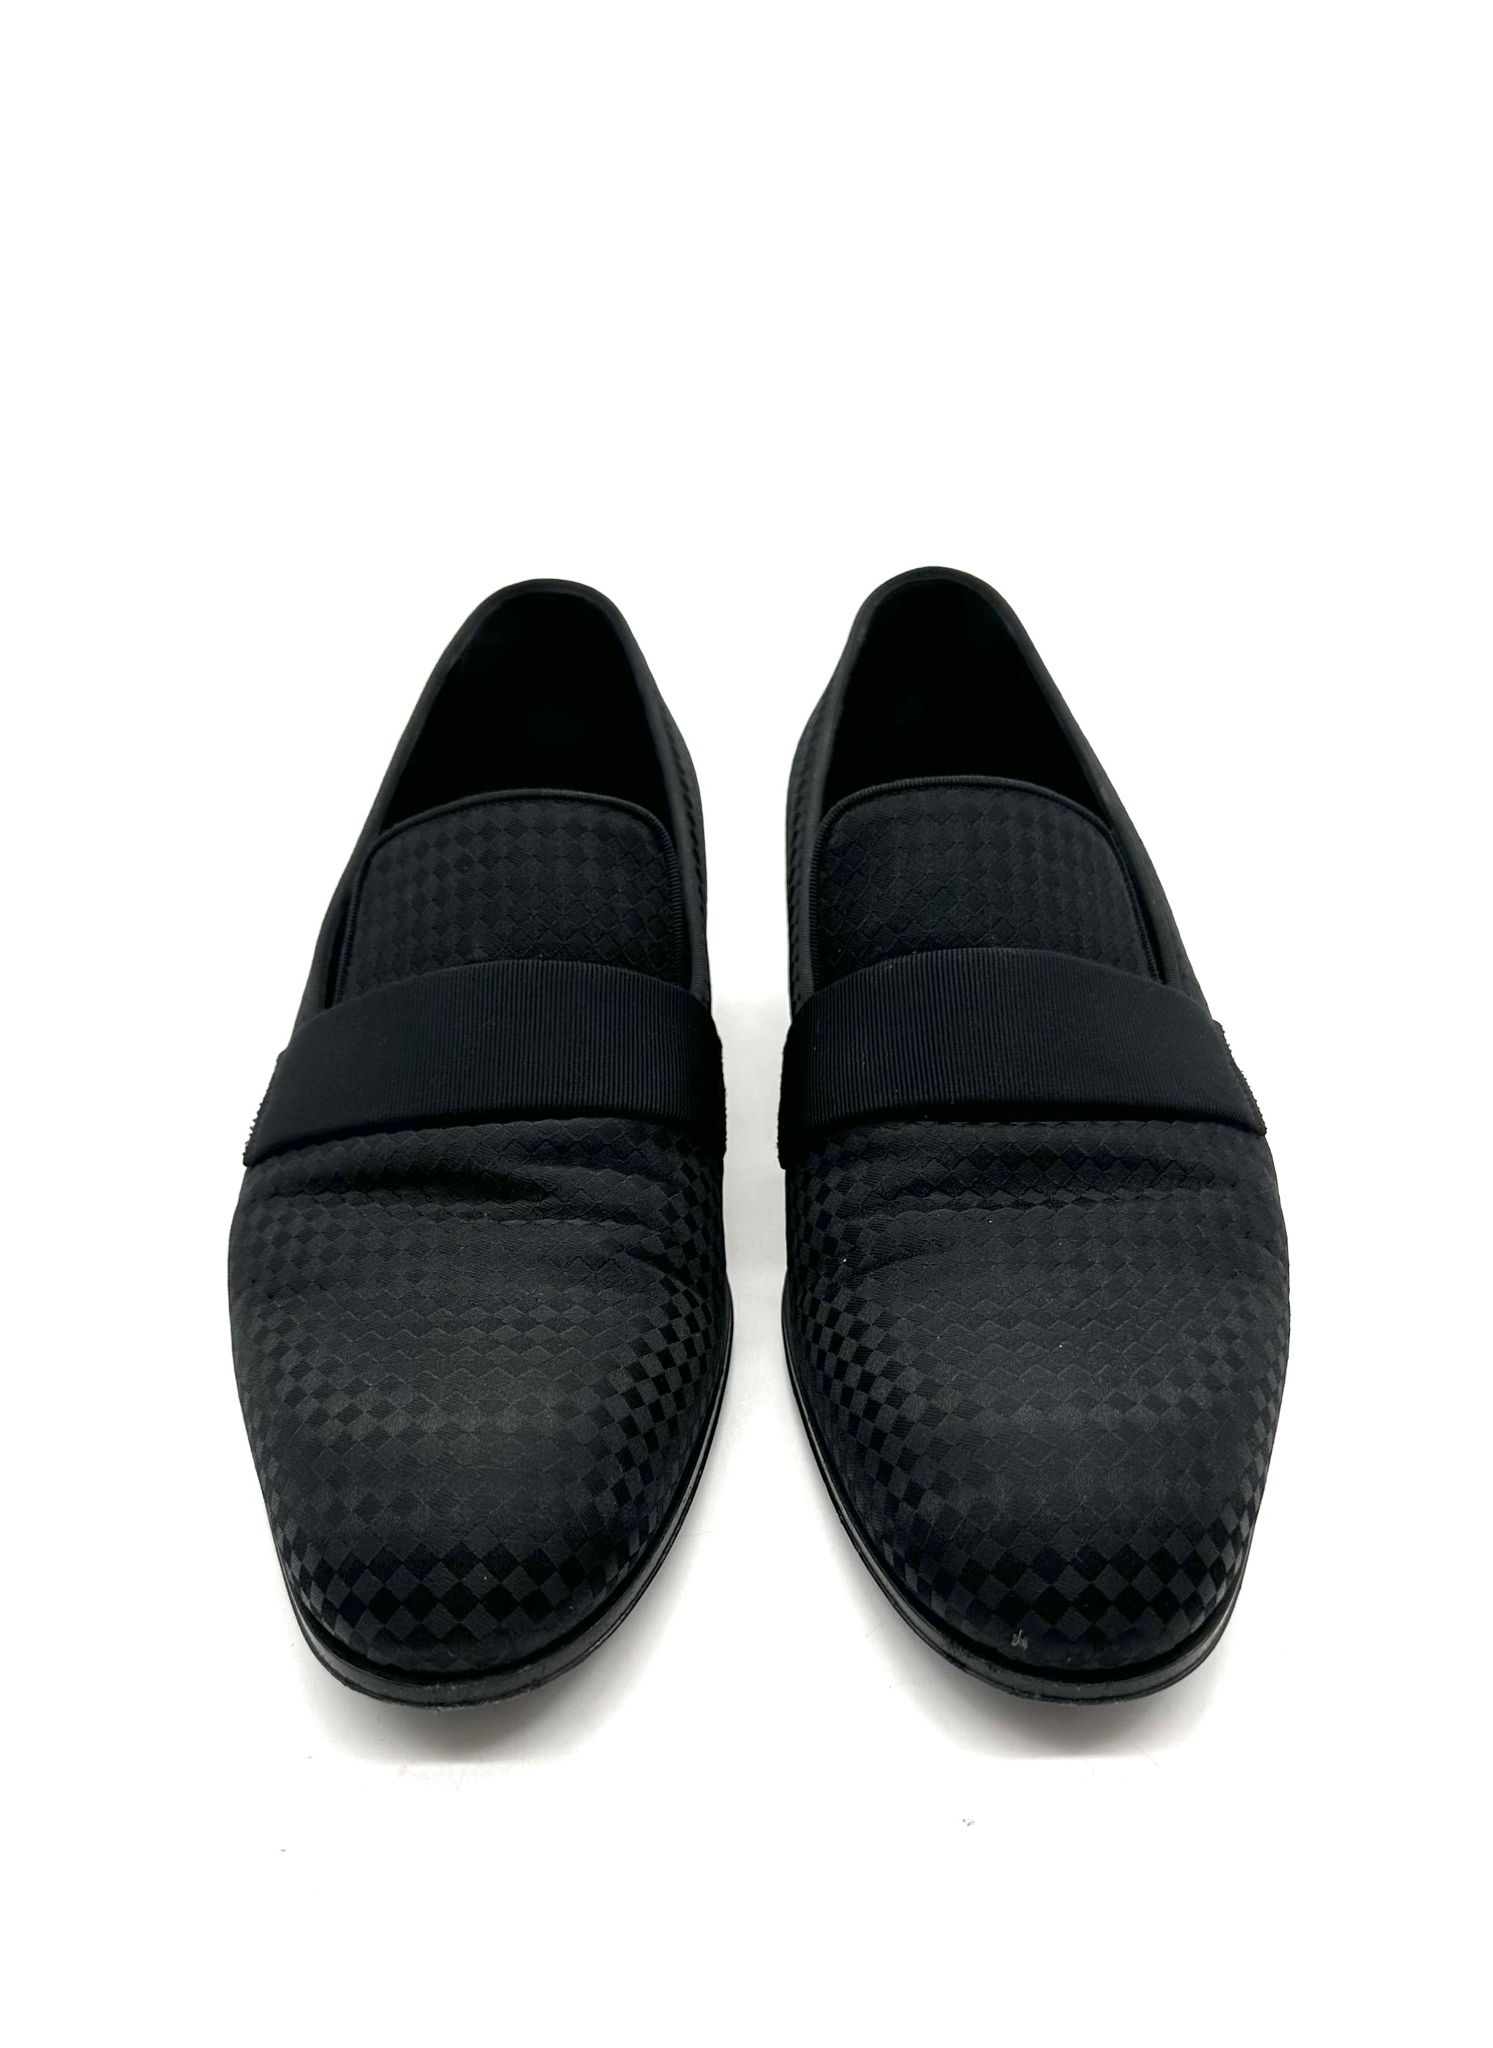 Zapatos Louis Vuitton